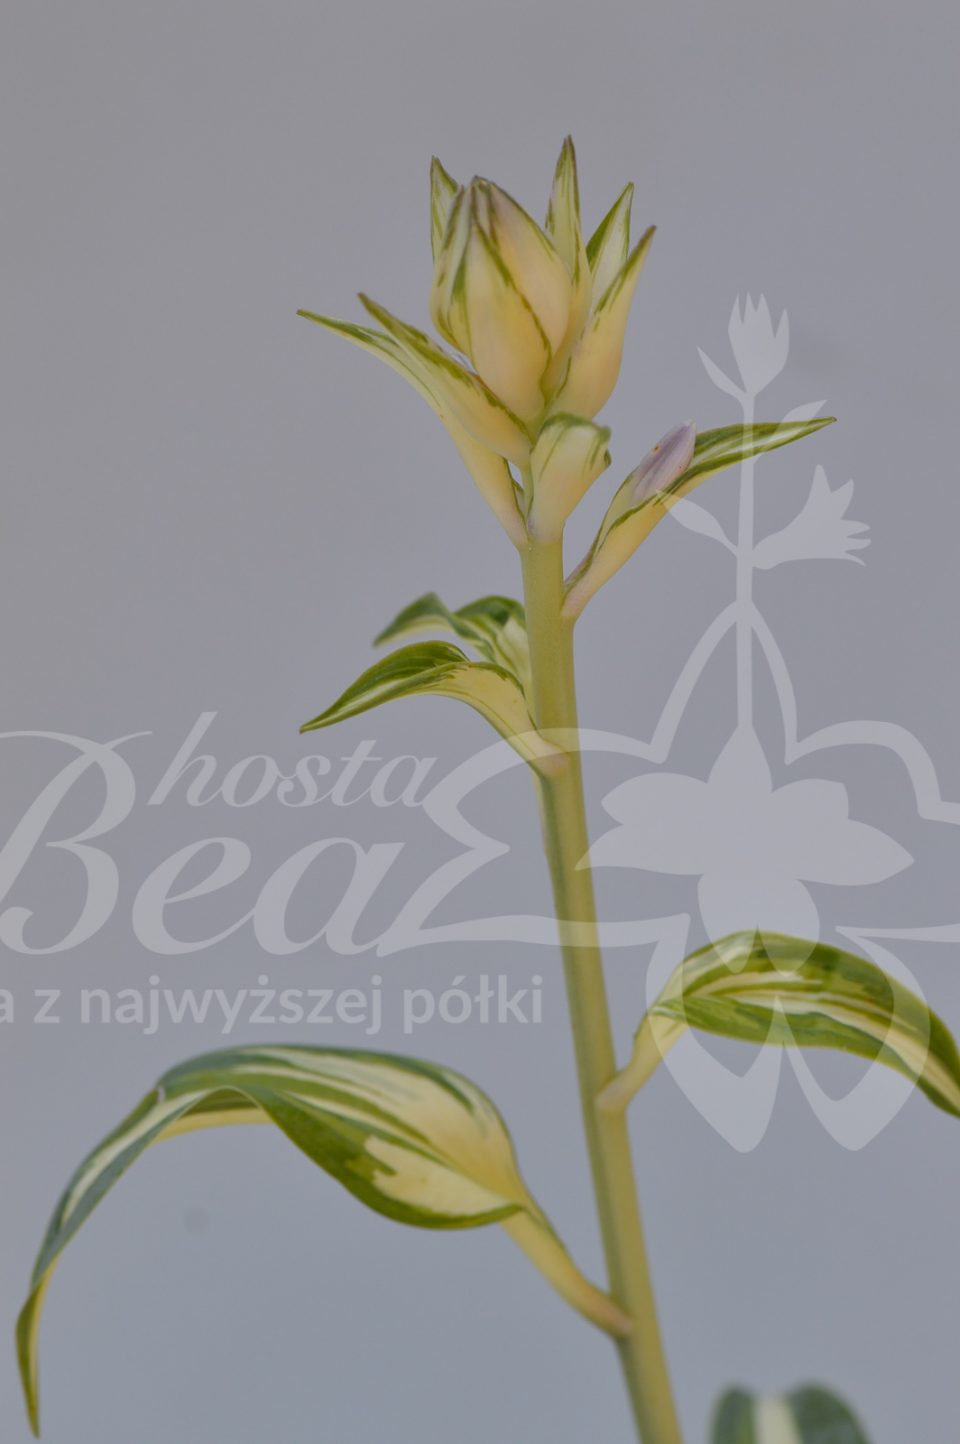 Kwiatostan hosty BEAuty from Poland